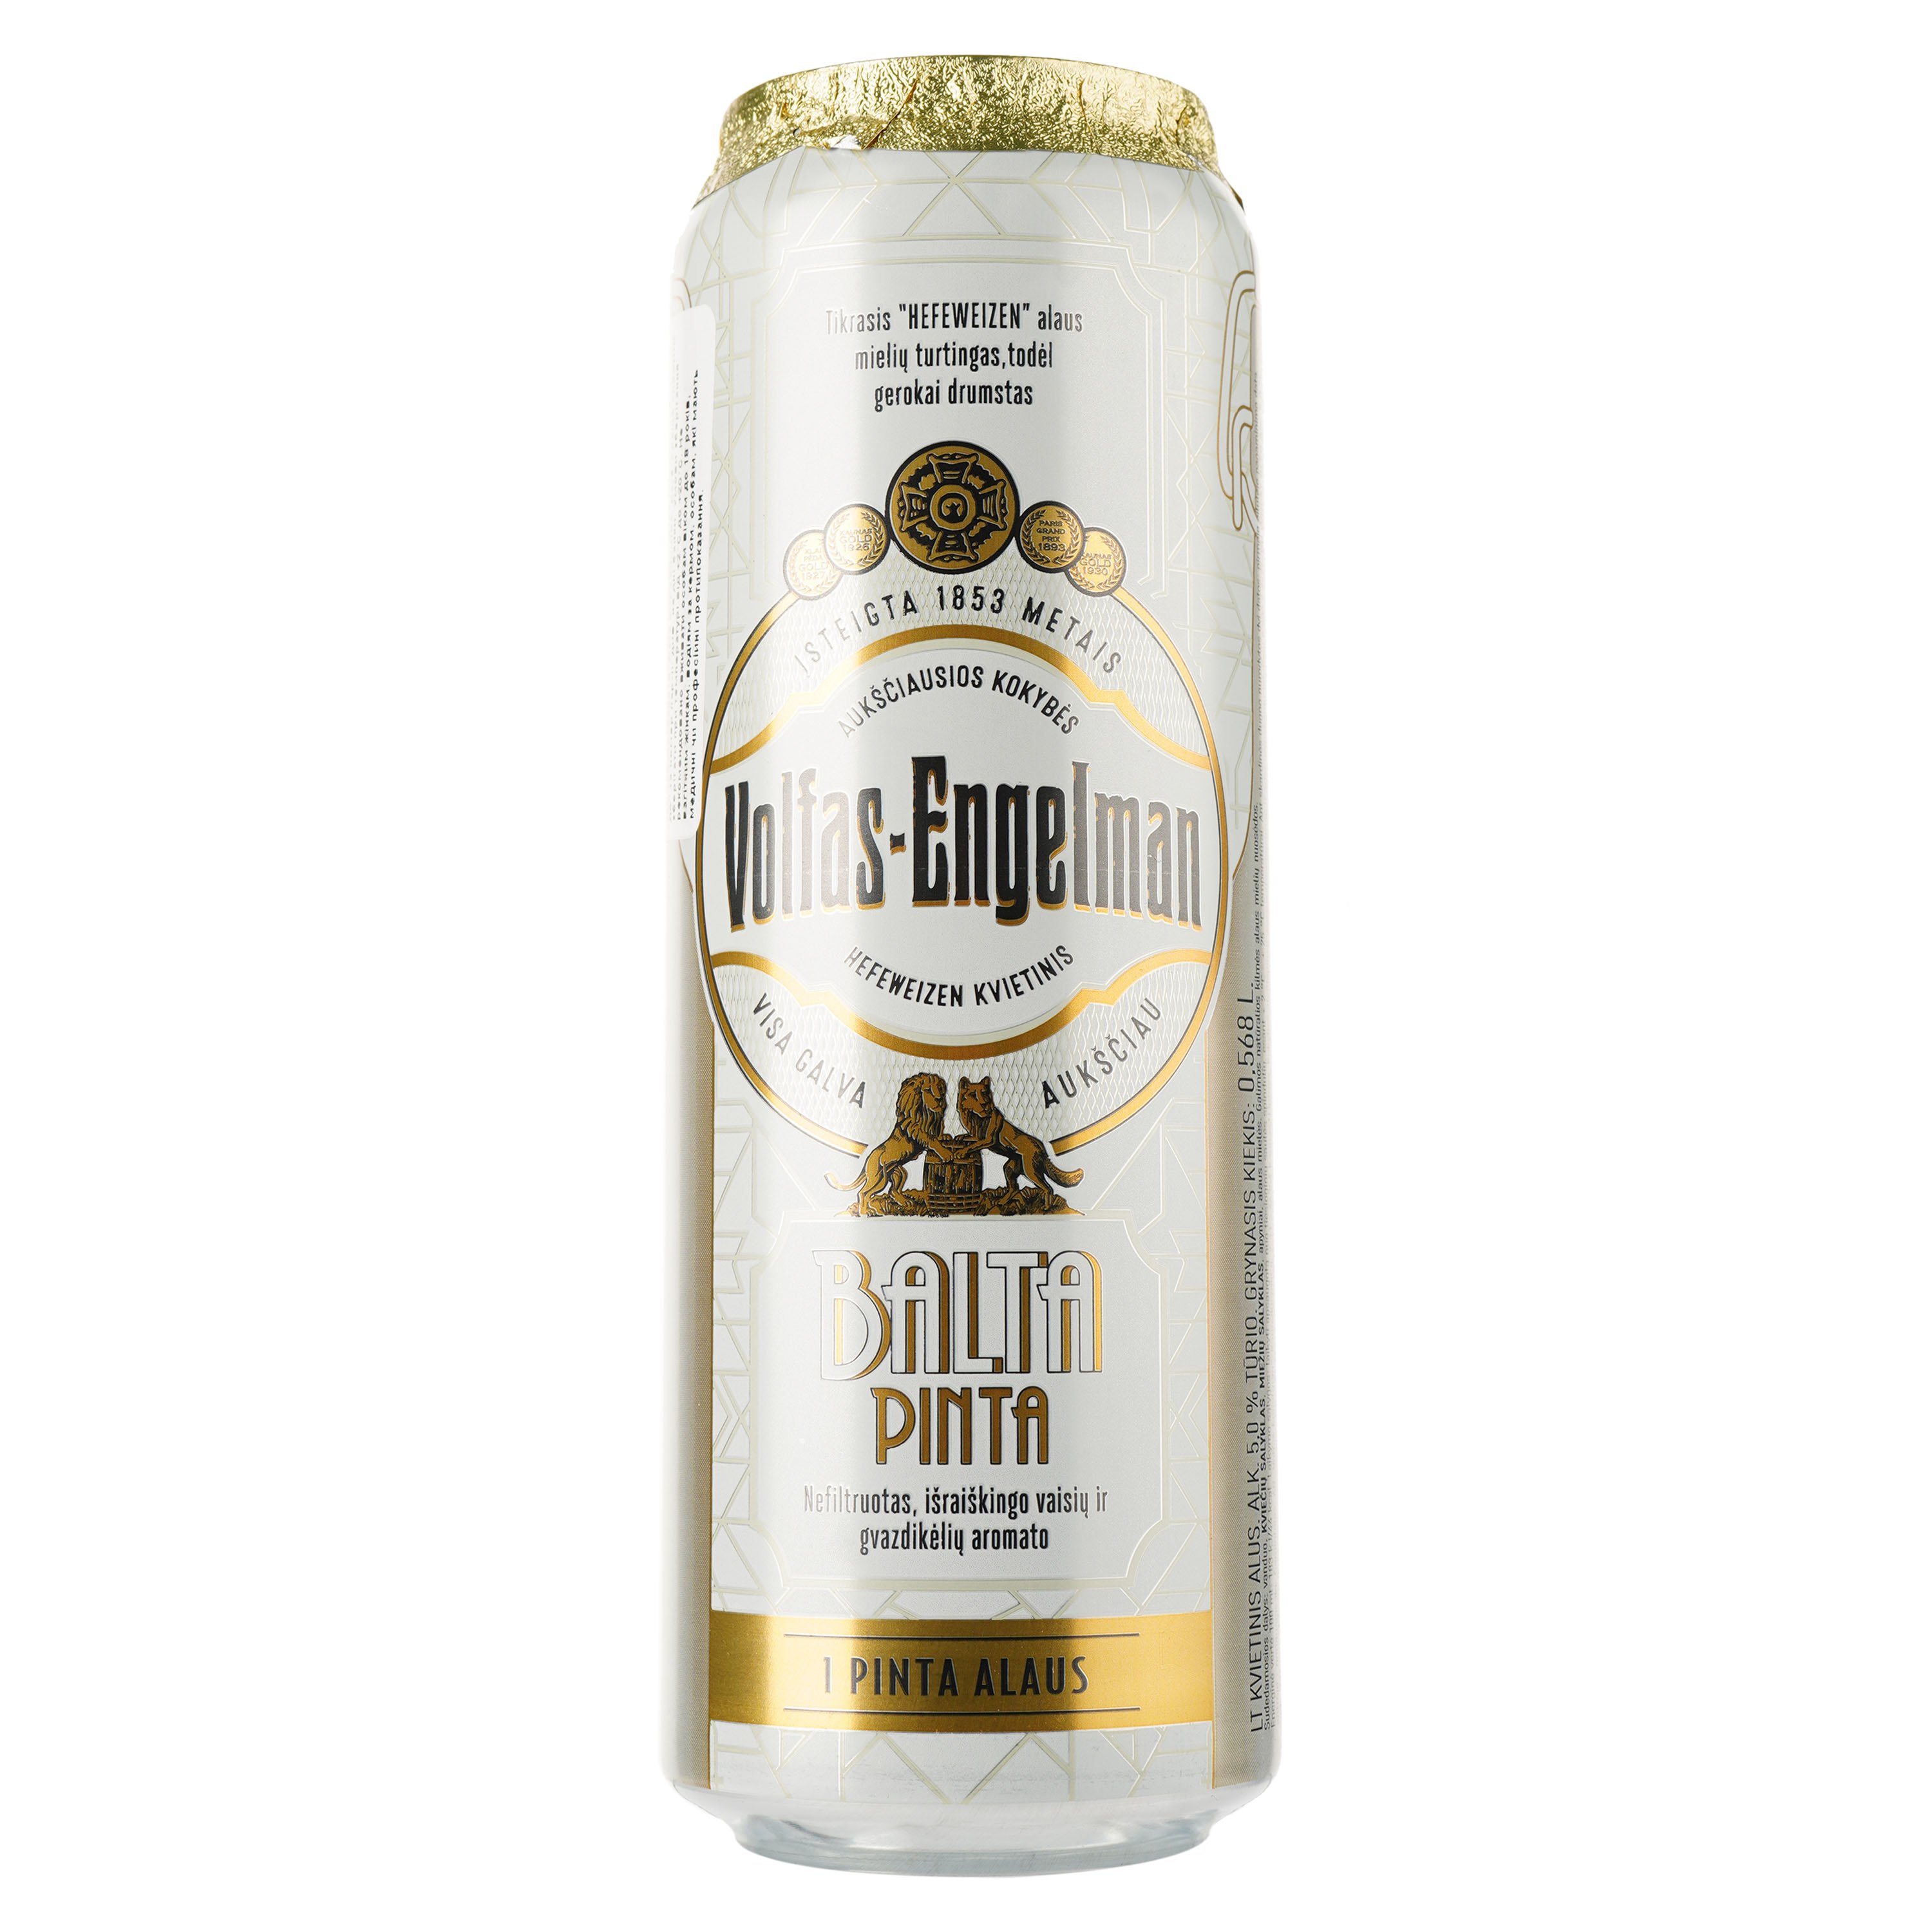 Пиво Volfas Engelman Balta Pinta, пшеничне, світле, нефільтроване, з/б, 5%, 0,568 л - фото 1